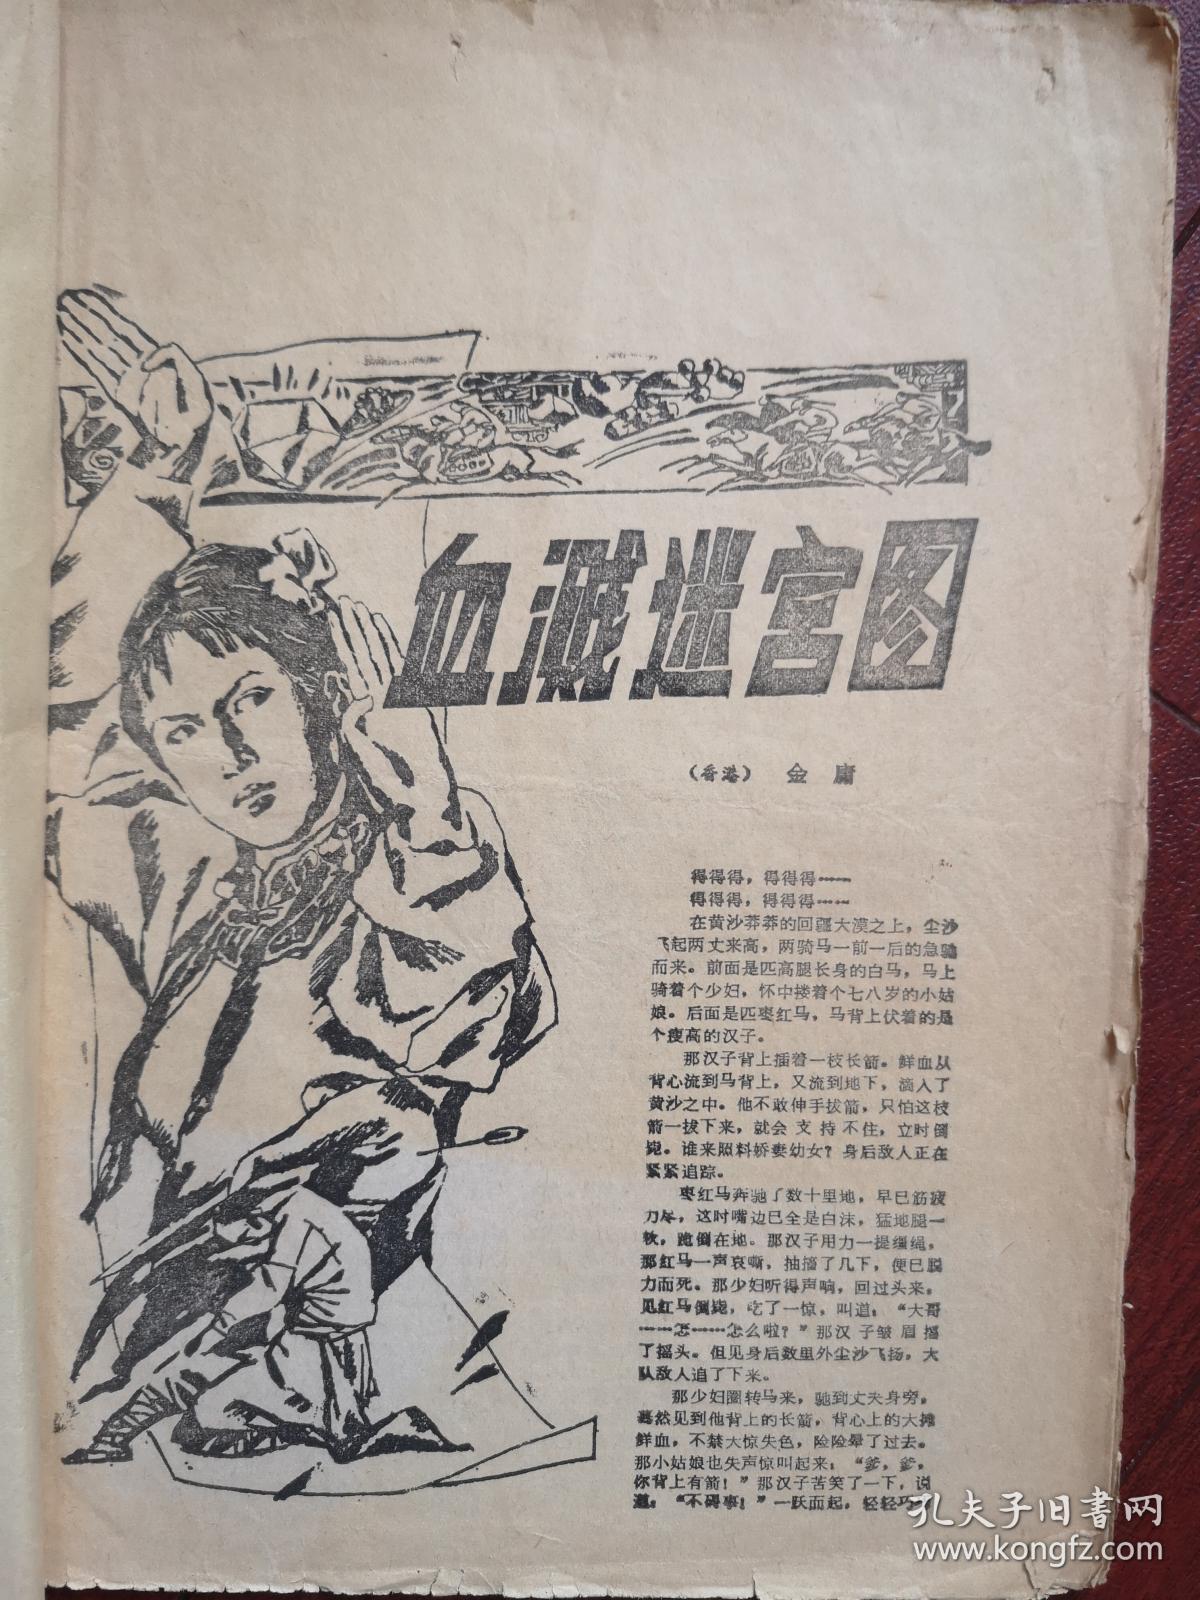 金庸武侠小说《血溅迷宫图》1984年（绿野文学增刊）、（详见说明）